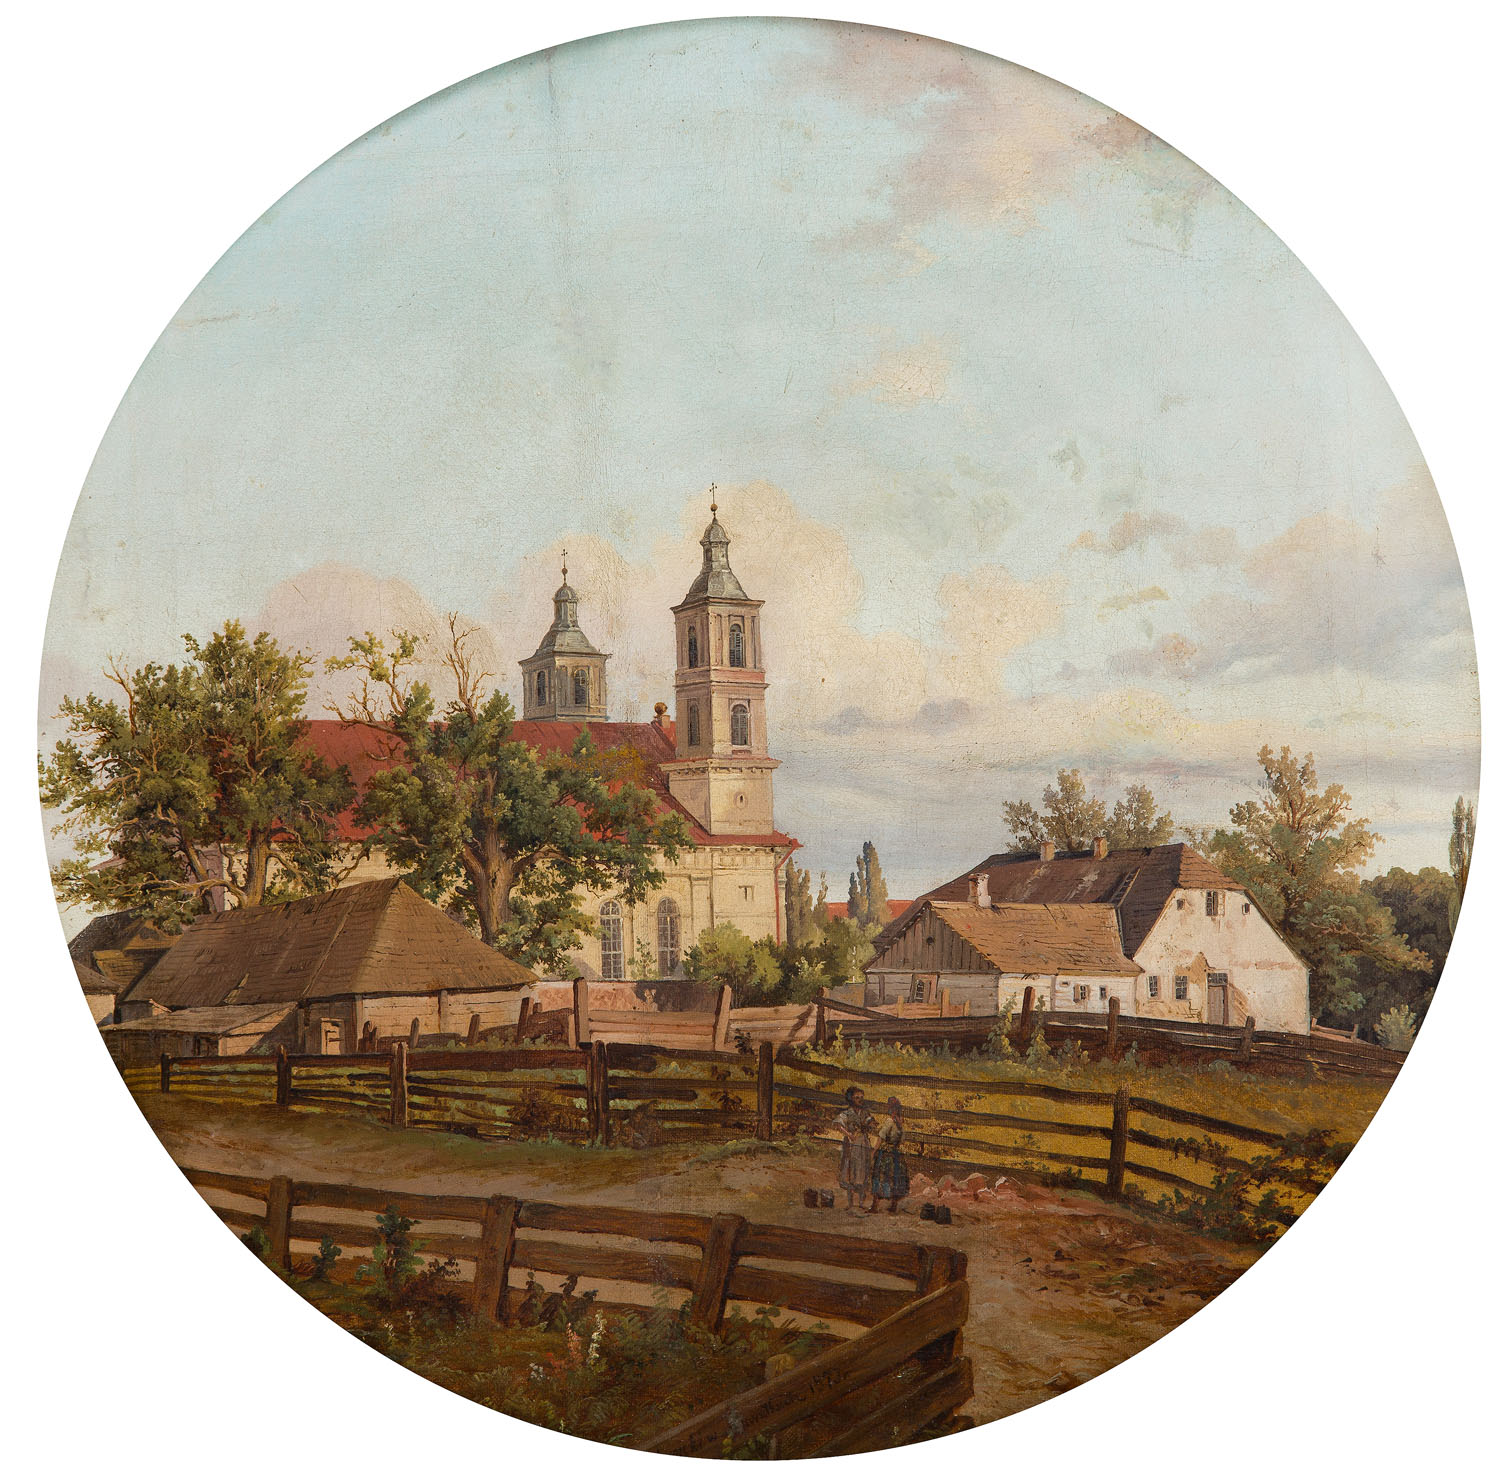 Kazimierz Górnicki (1838 - 1889 ) "Widok na kościół w Suwałkach", 1873 Muzeum Okręgowe w Suwałkach